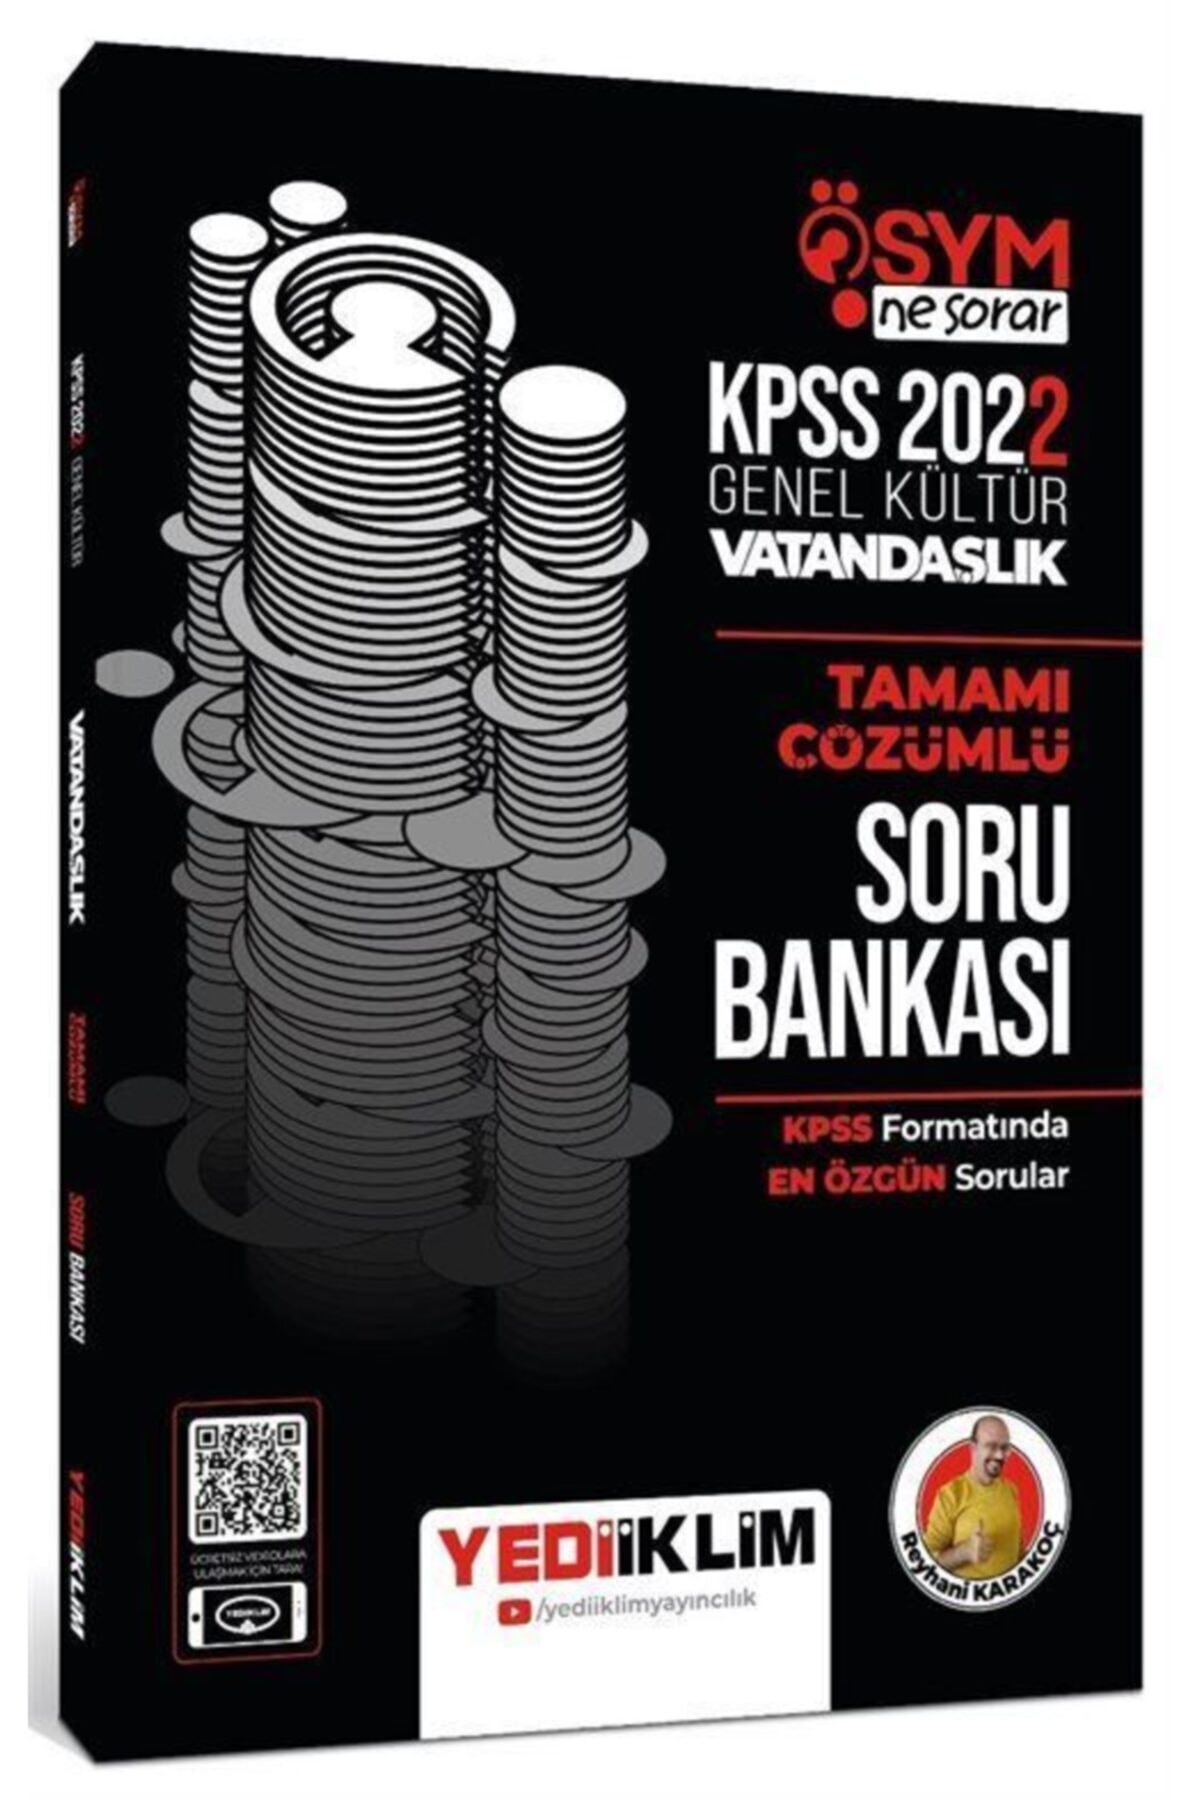 2022 Kpss Genel Kültür Ösym Ne Sorar Vatandaşlık Tamamı Çözümlü Soru Bankası